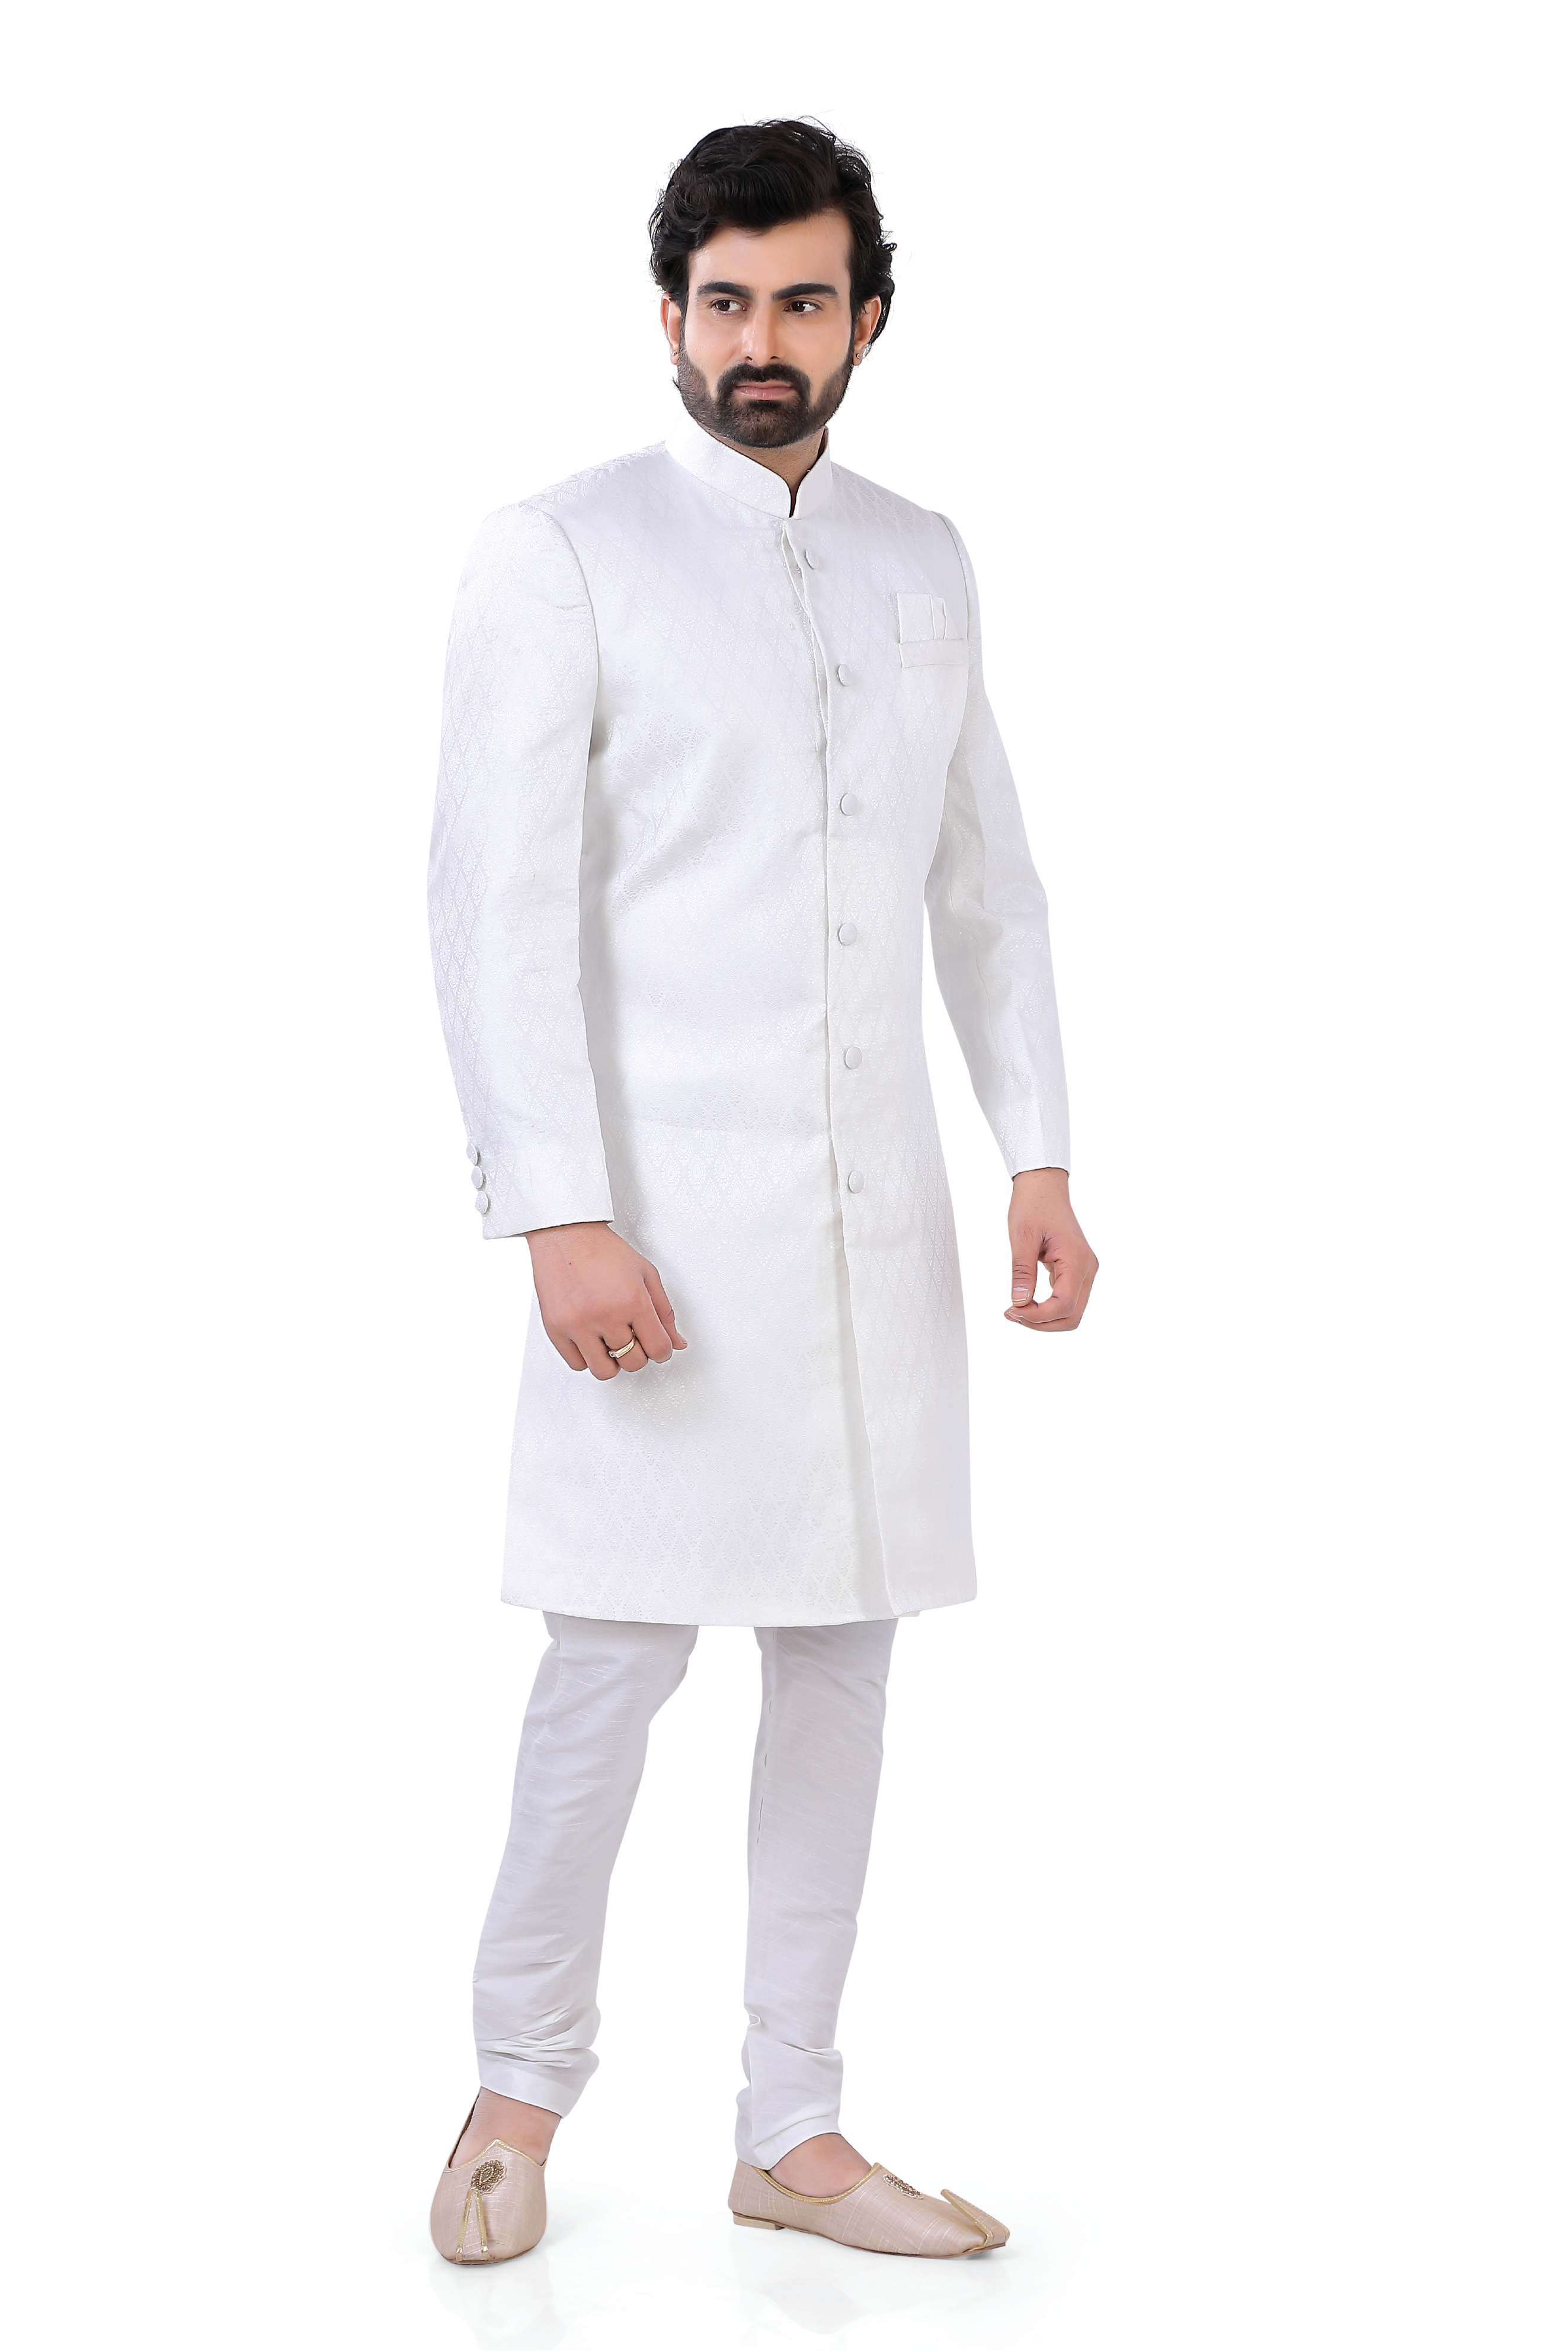 2 pieces indo western Silk Sherwani in white